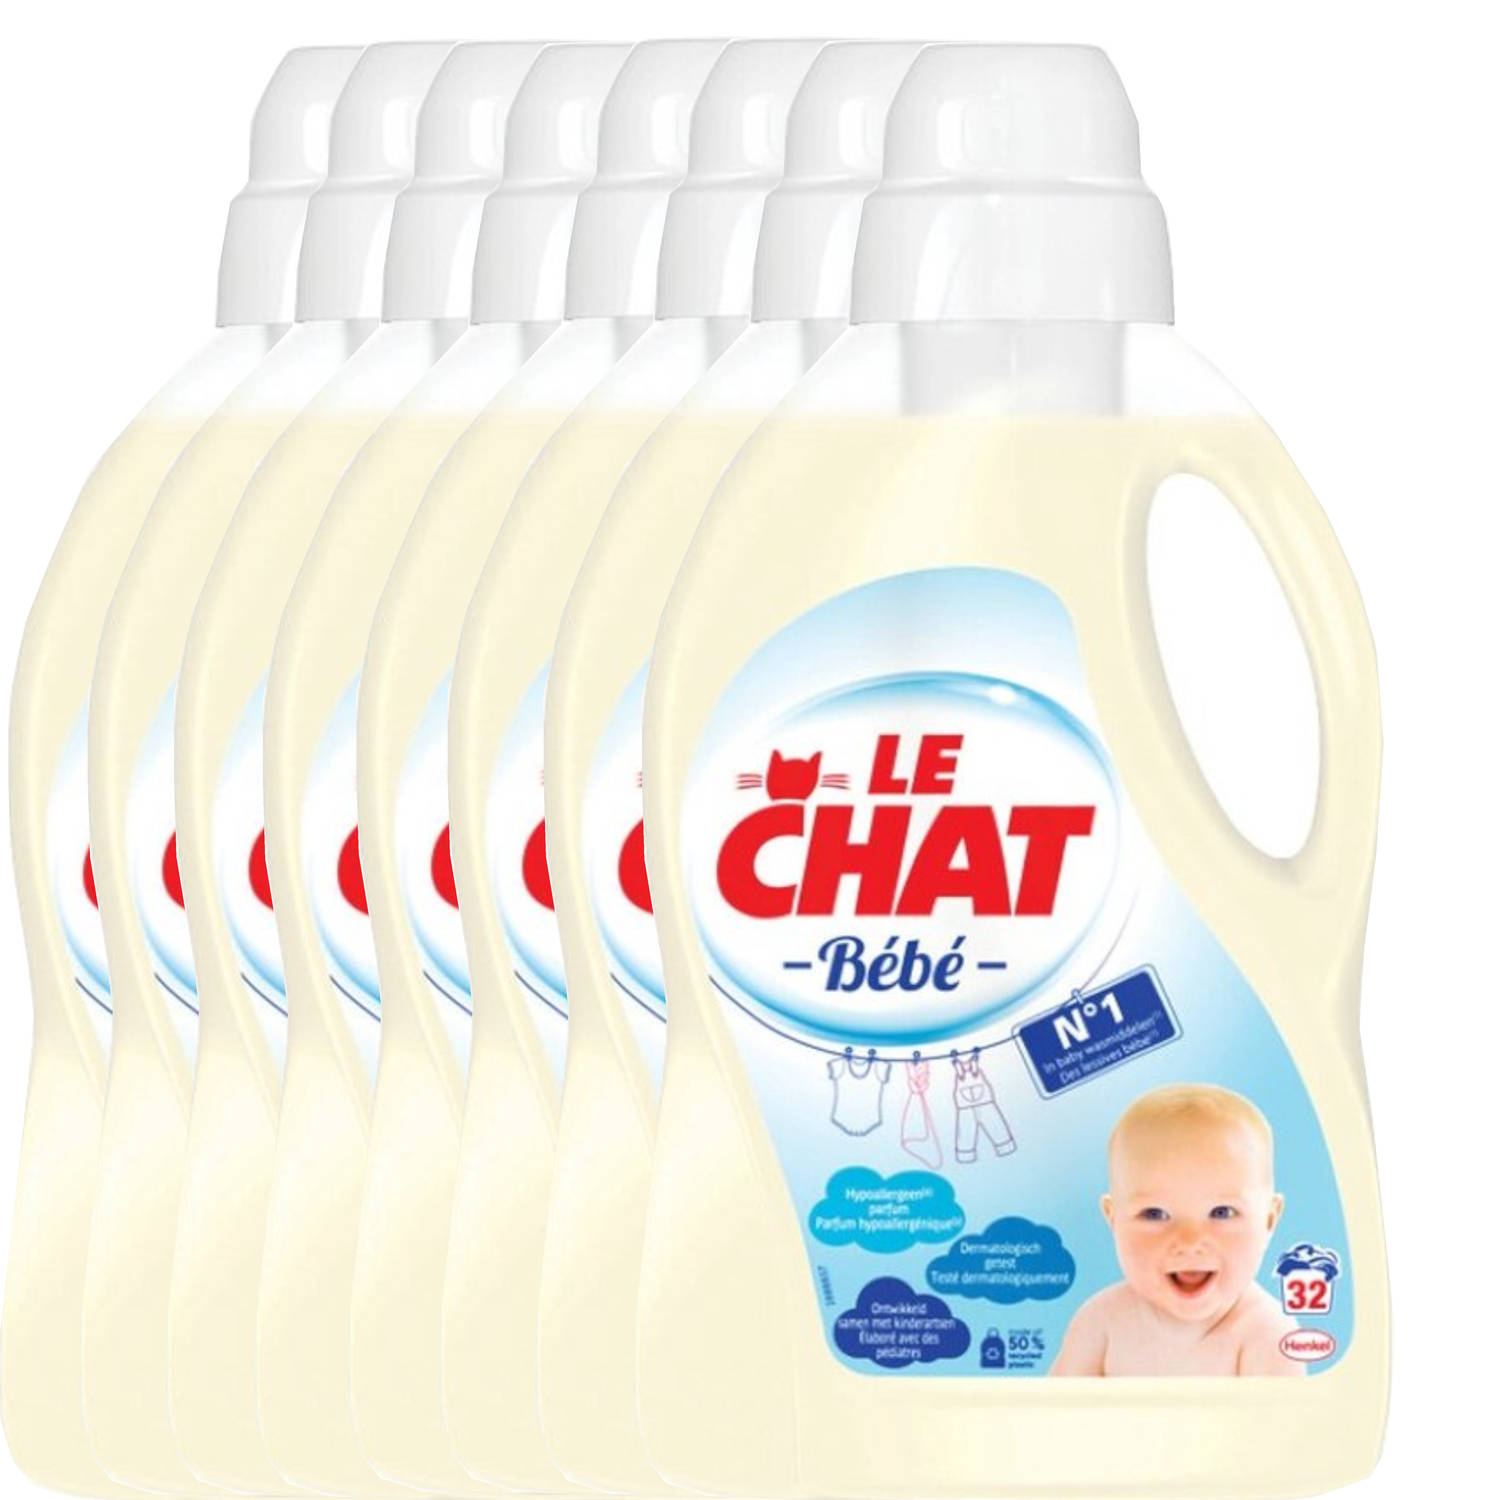 Le Chat Baby Vloeibaar Wasmiddel (Voordeelverpakking) - 8 x 1.440 l (256 wasbeurten)